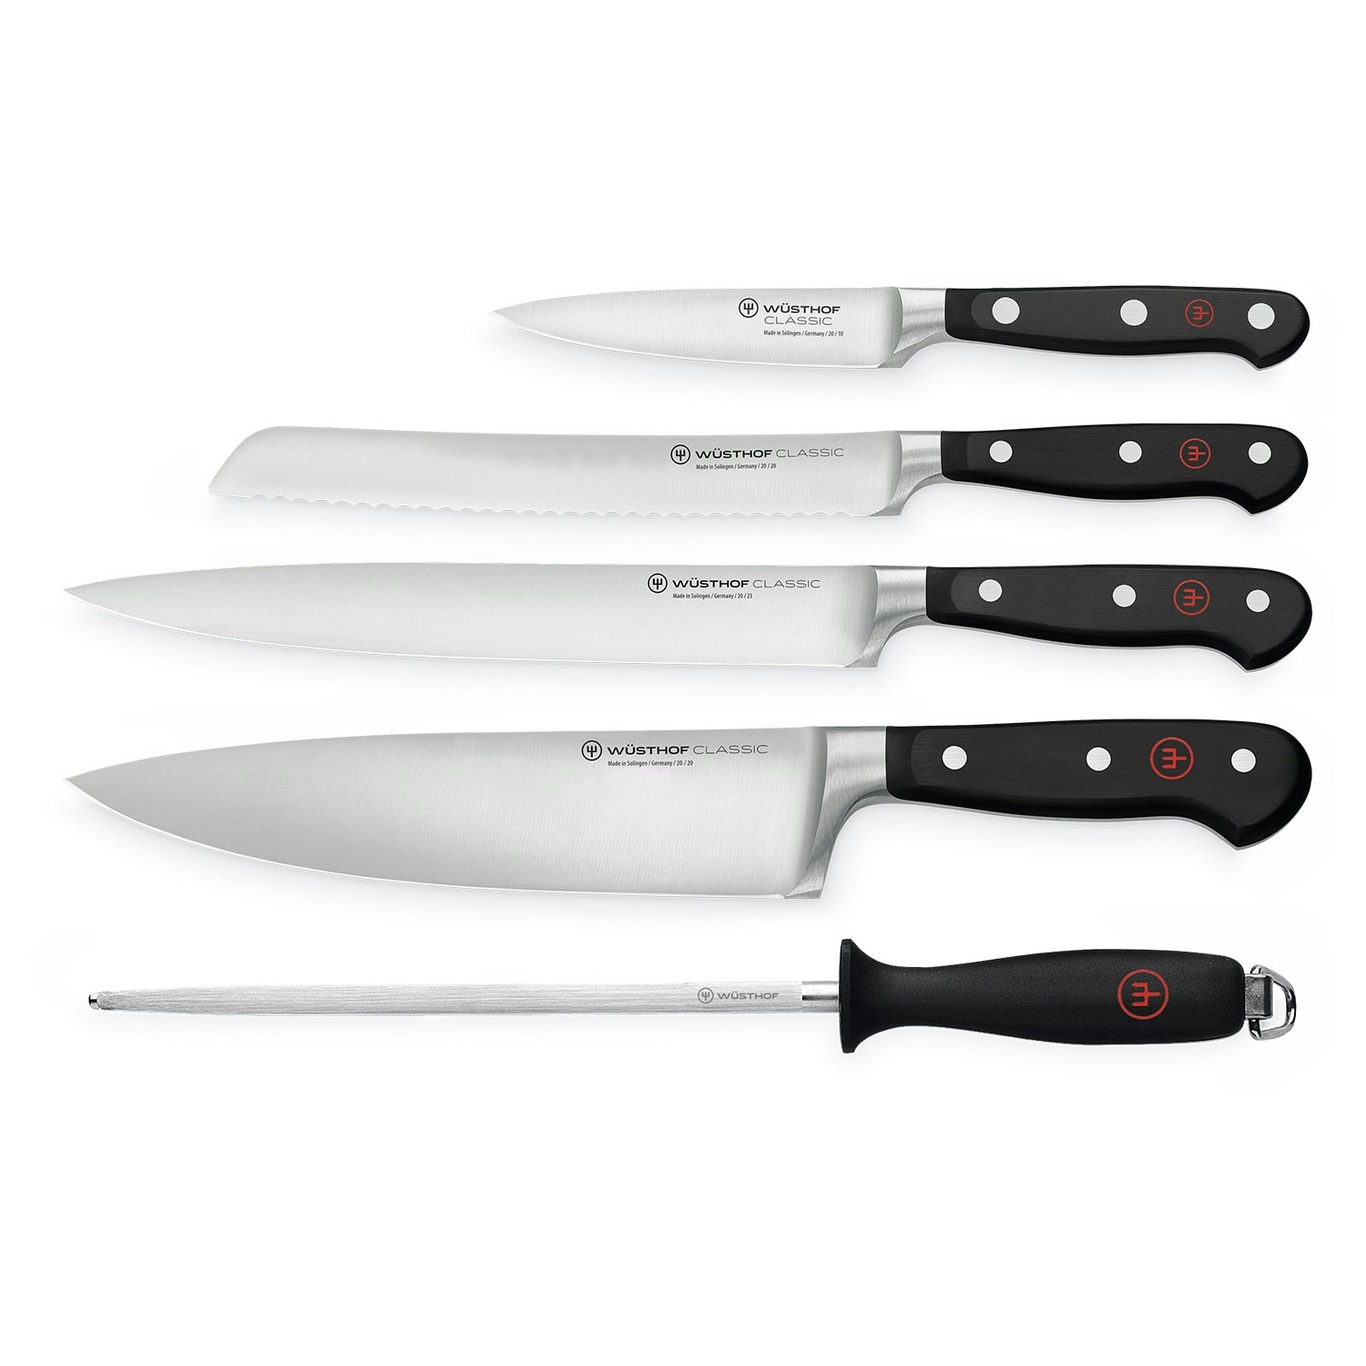 https://royaldesign.com/image/2/wusthof-classic-knife-set-5-pack-0?w=800&quality=80